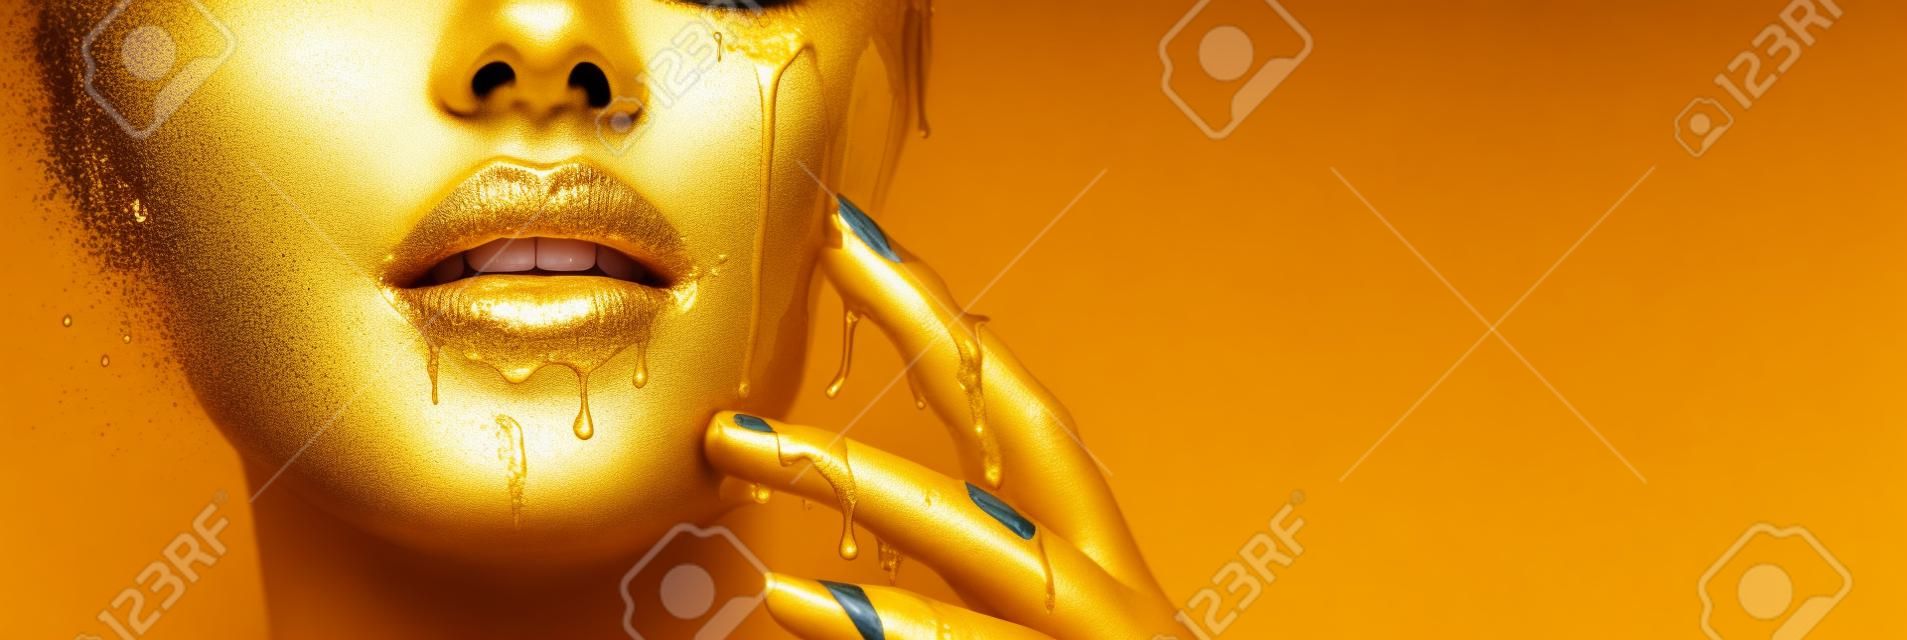 Manchas de tinta dourada goteja dos lábios do rosto e da mão, gotas líquidas douradas na boca da menina modelo bonita, maquiagem abstrata criativa.